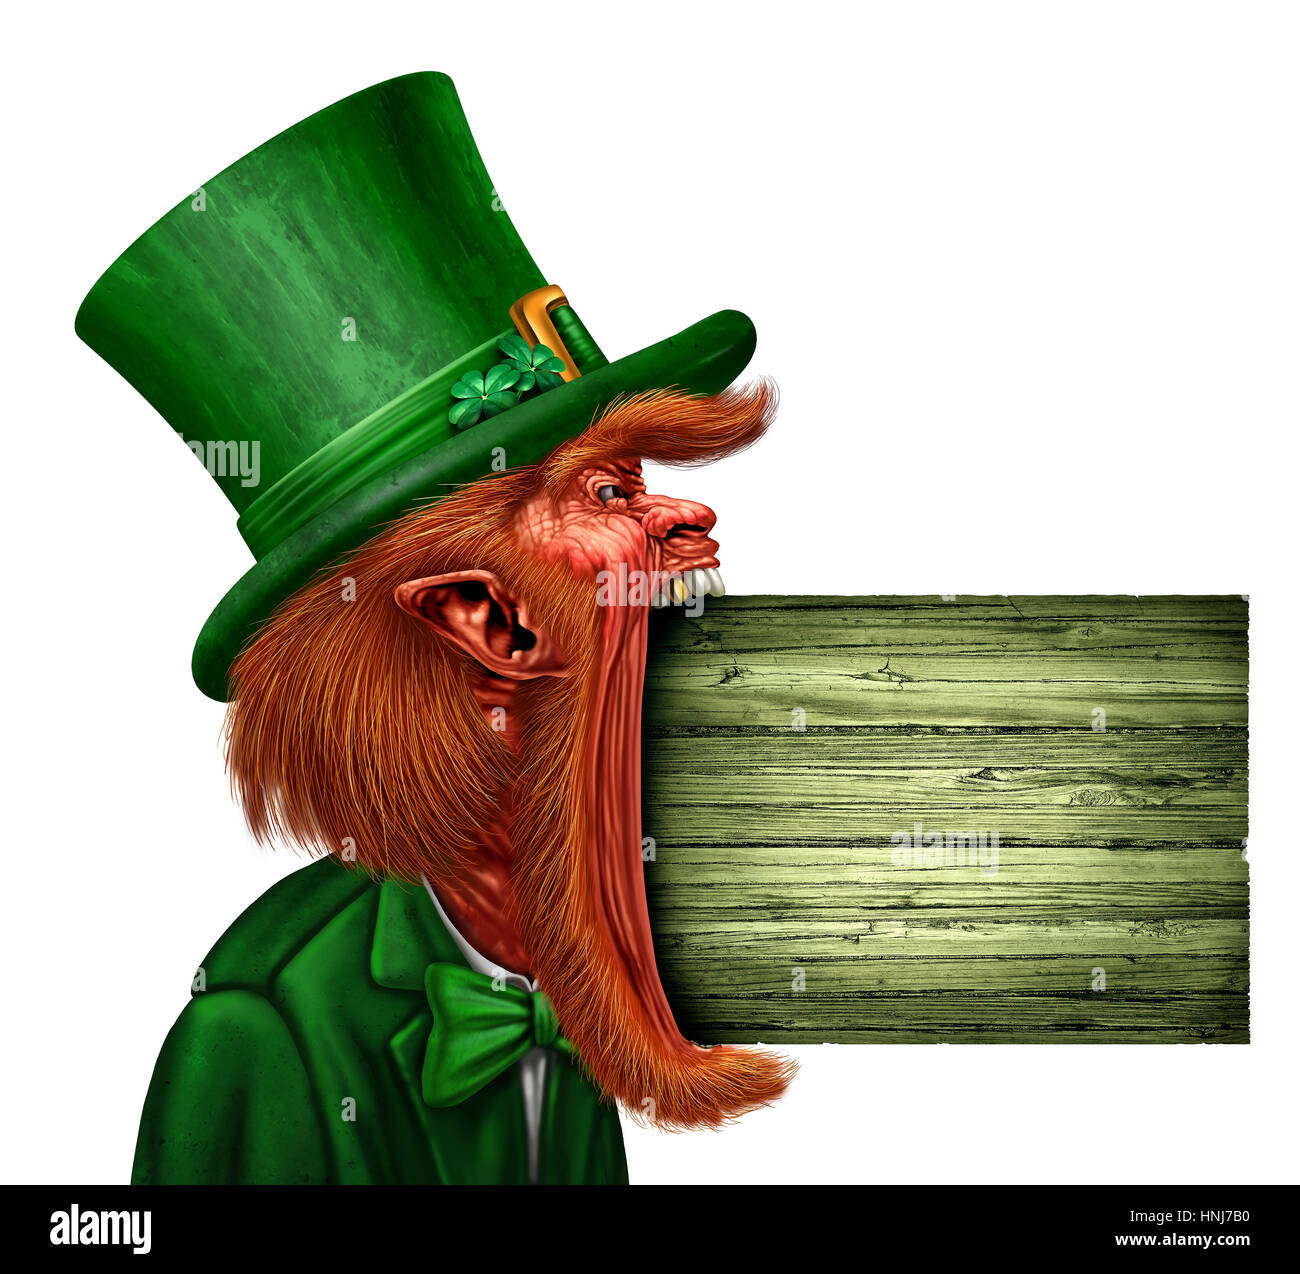 Kobold Saint Patrick-Schild eine Frühling Urlaub Botschaft zu vermitteln, als irische magischen Elfen-Zeichen in einen offenen Mund Seite sehen beißen. Stockfoto